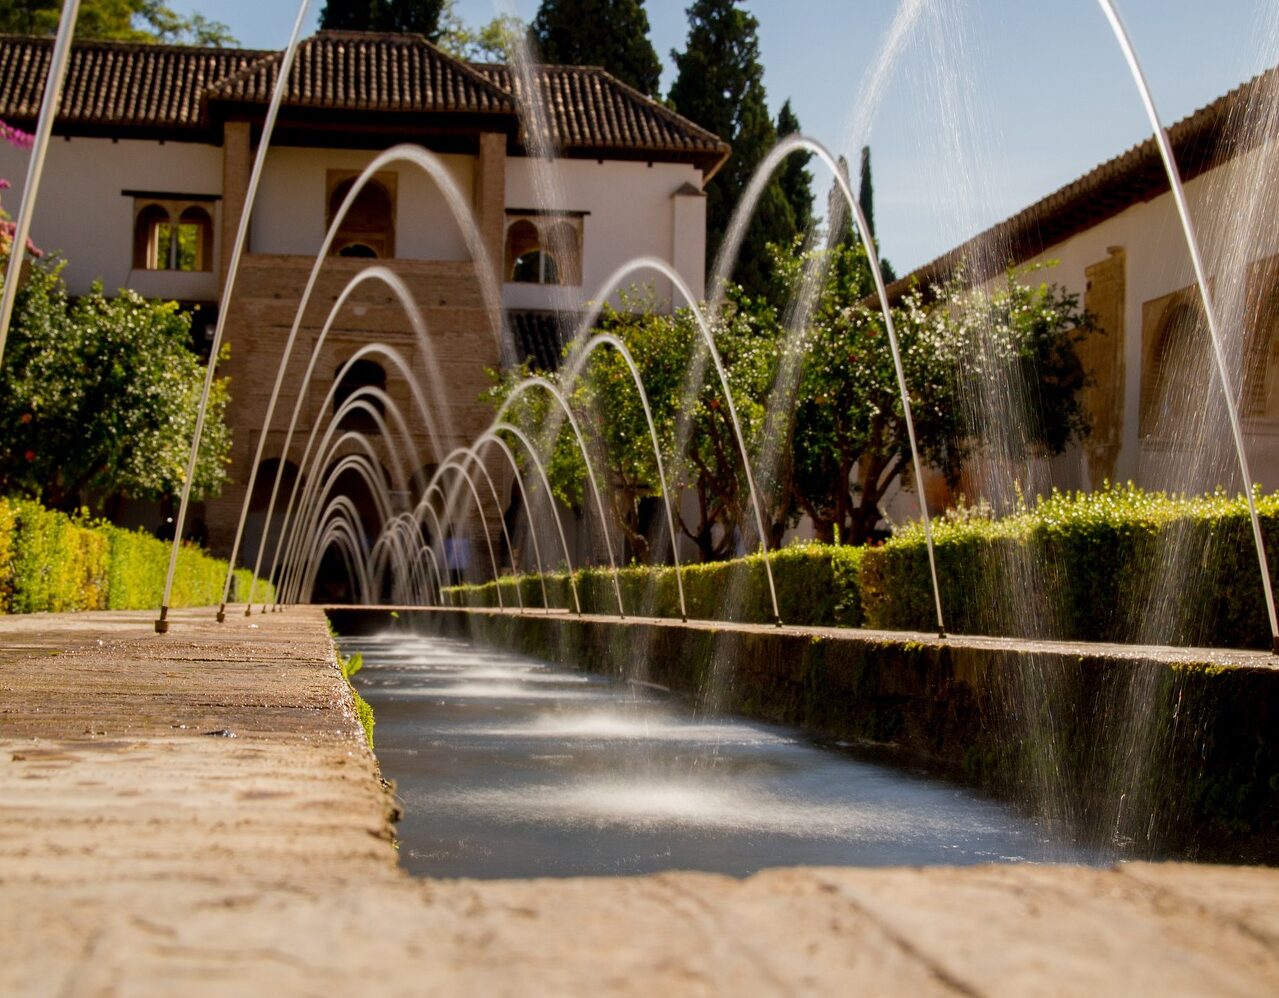 Visita guiada por la Alhambra, jardines Generalife y Alcazaba